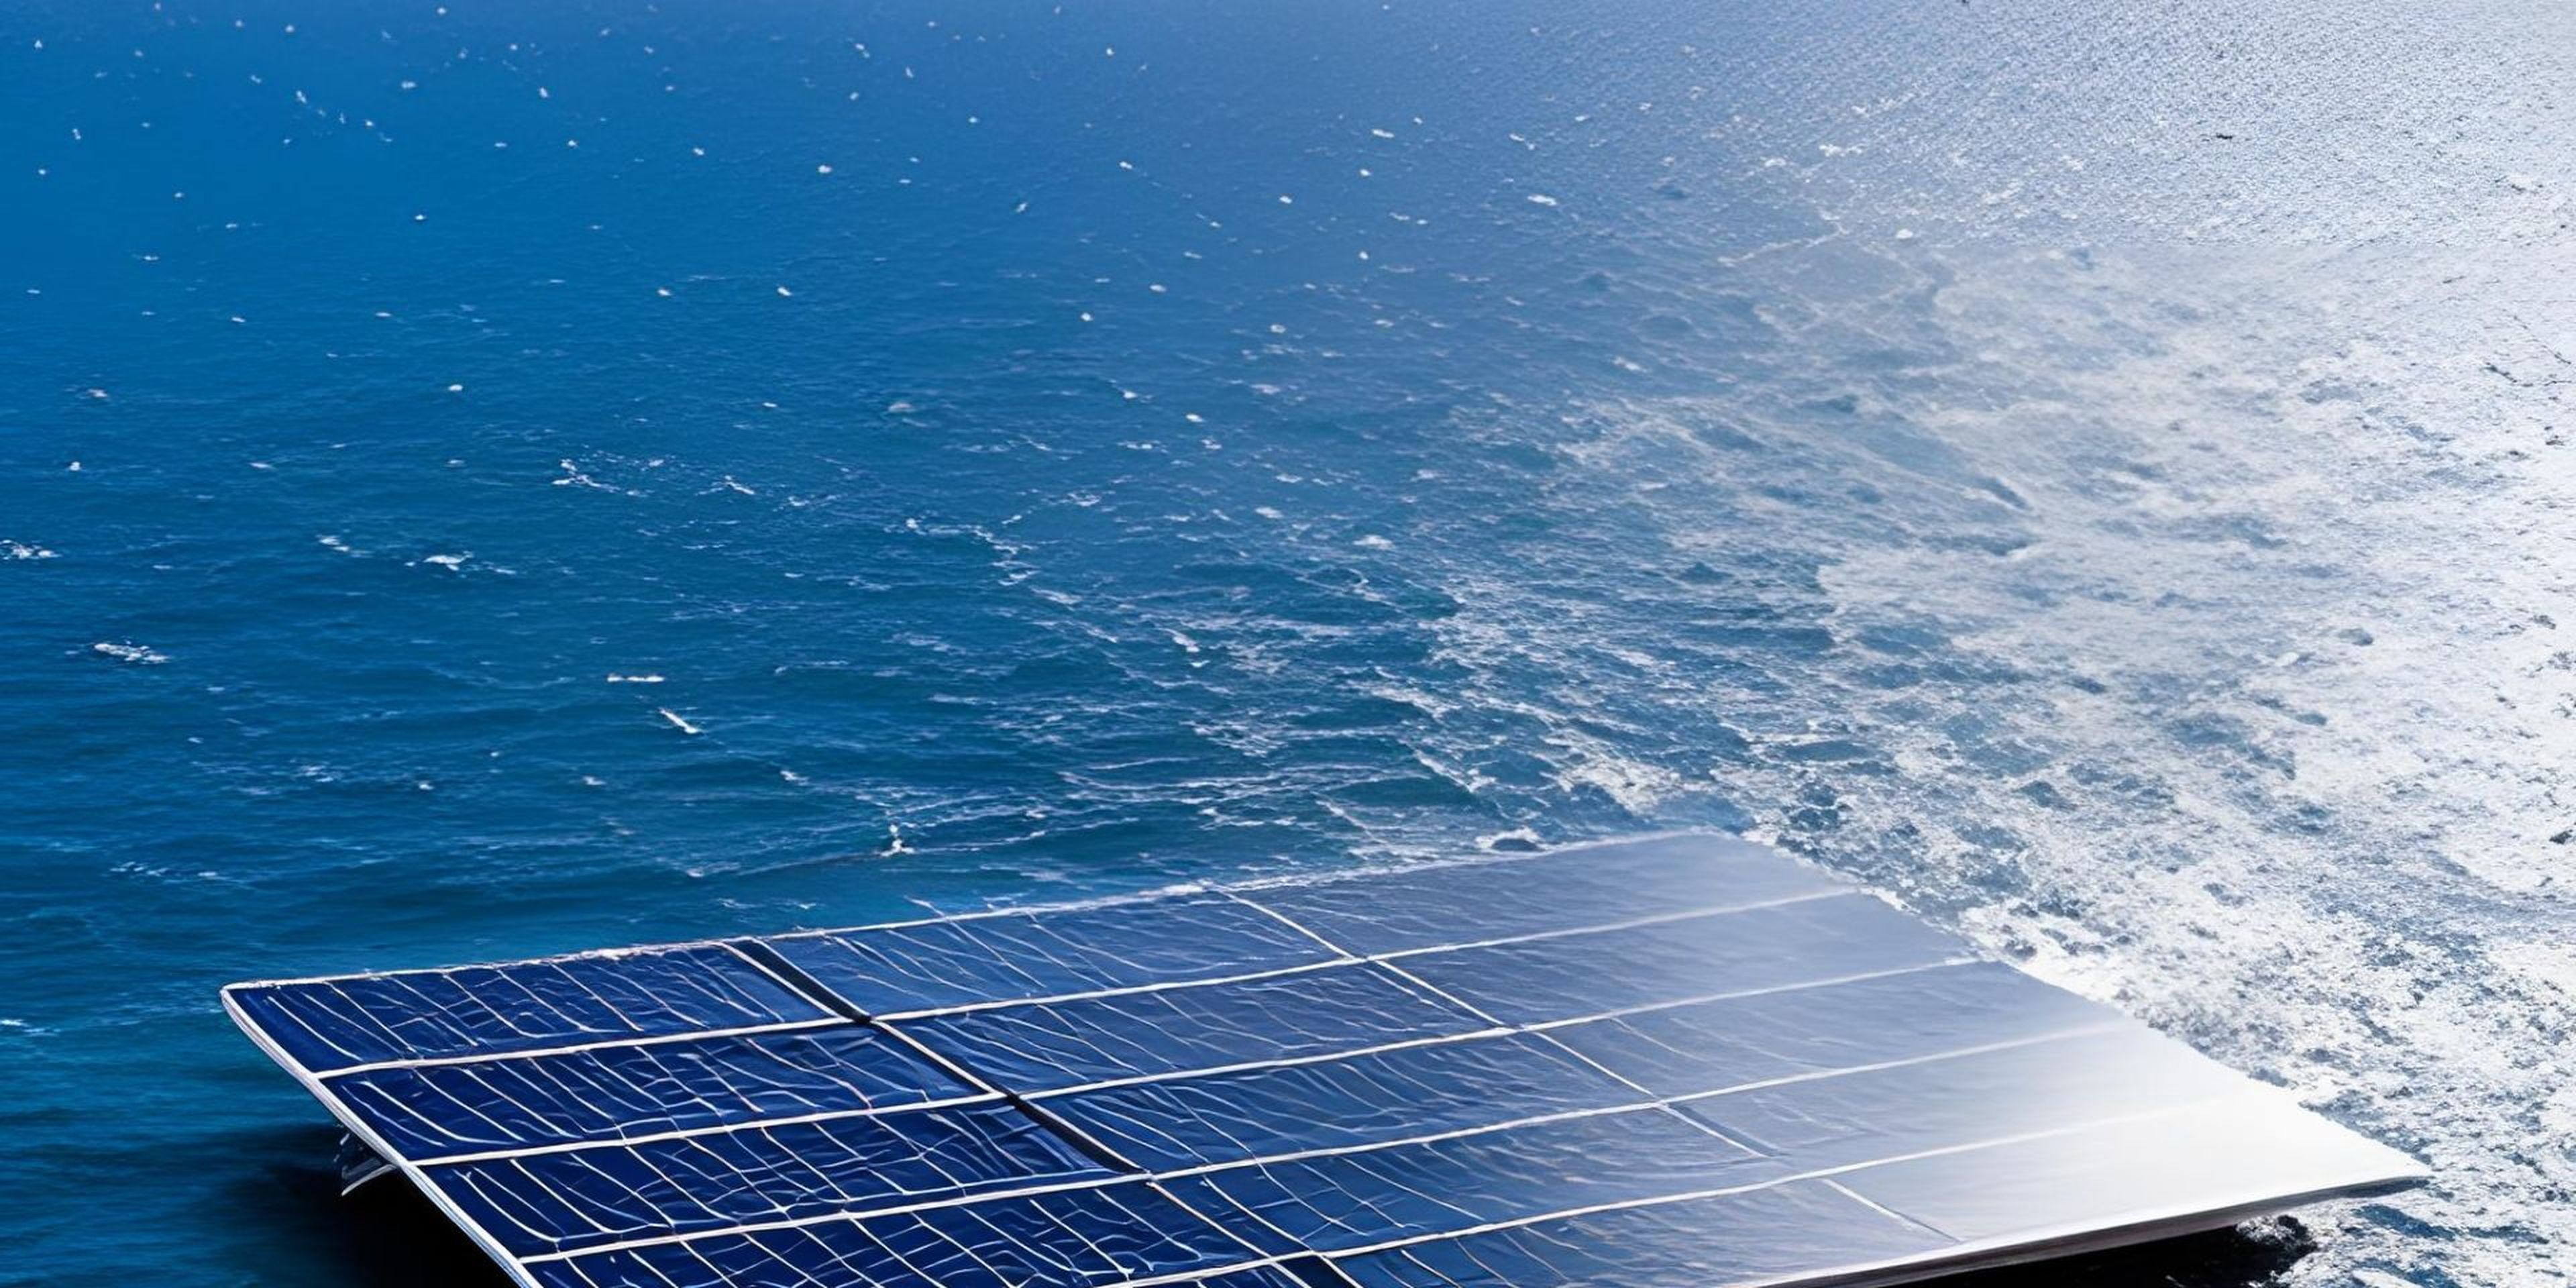 Estos son los lugares óptimos para generar energía solar ilimitada flotante en el océano